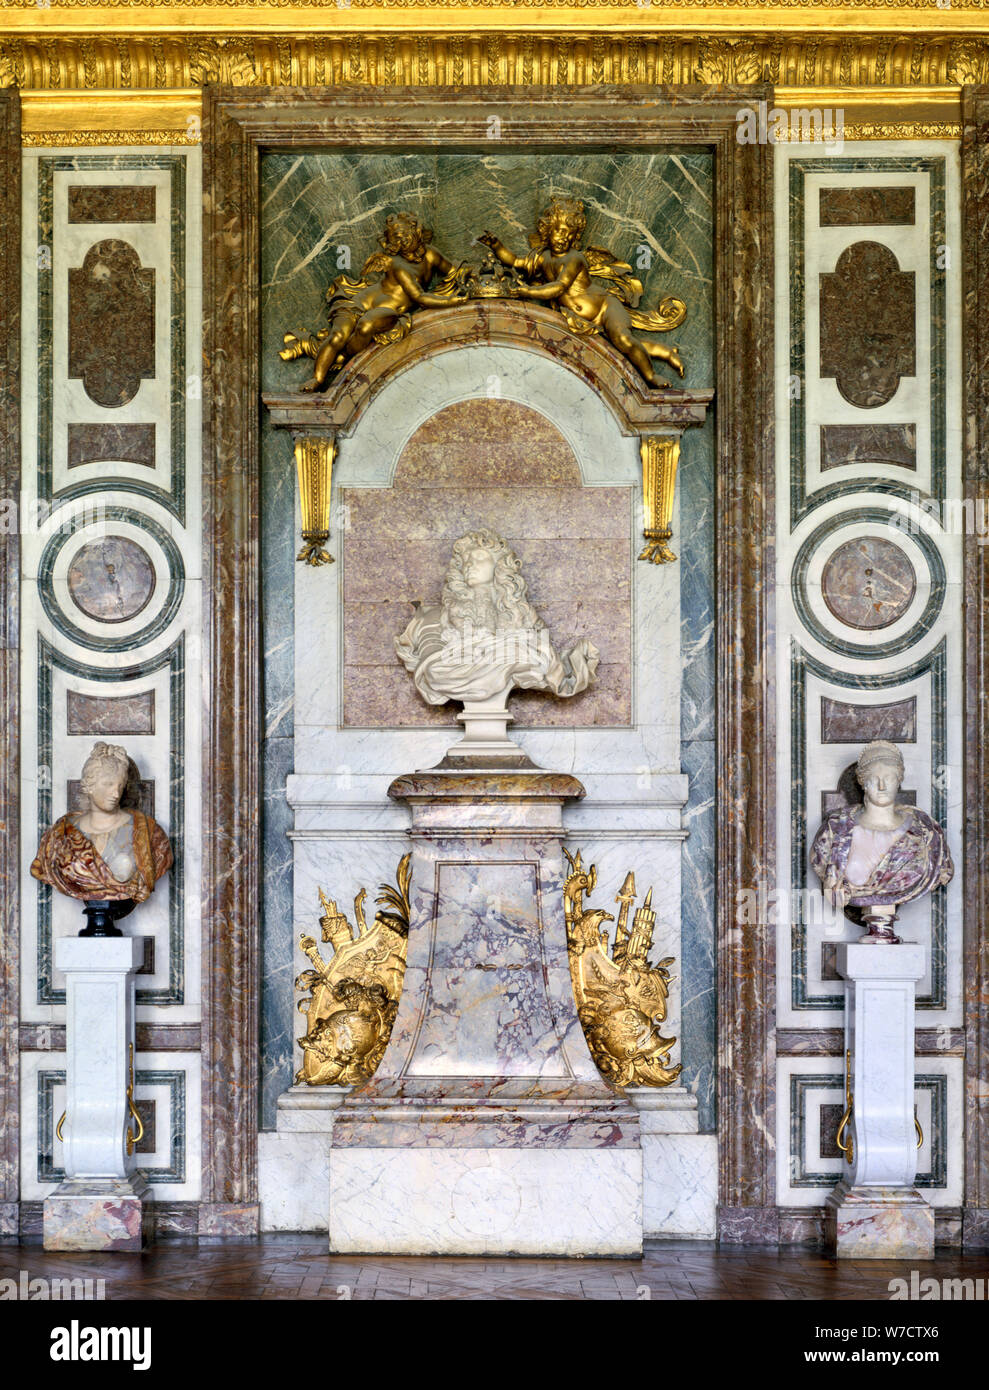 Busto di Luigi XIV, Salon de Diane, Grand Appartamento, Chateau de Versailles, Francia del XVII secolo. Artista: Gian Lorenzo Bernini Foto Stock